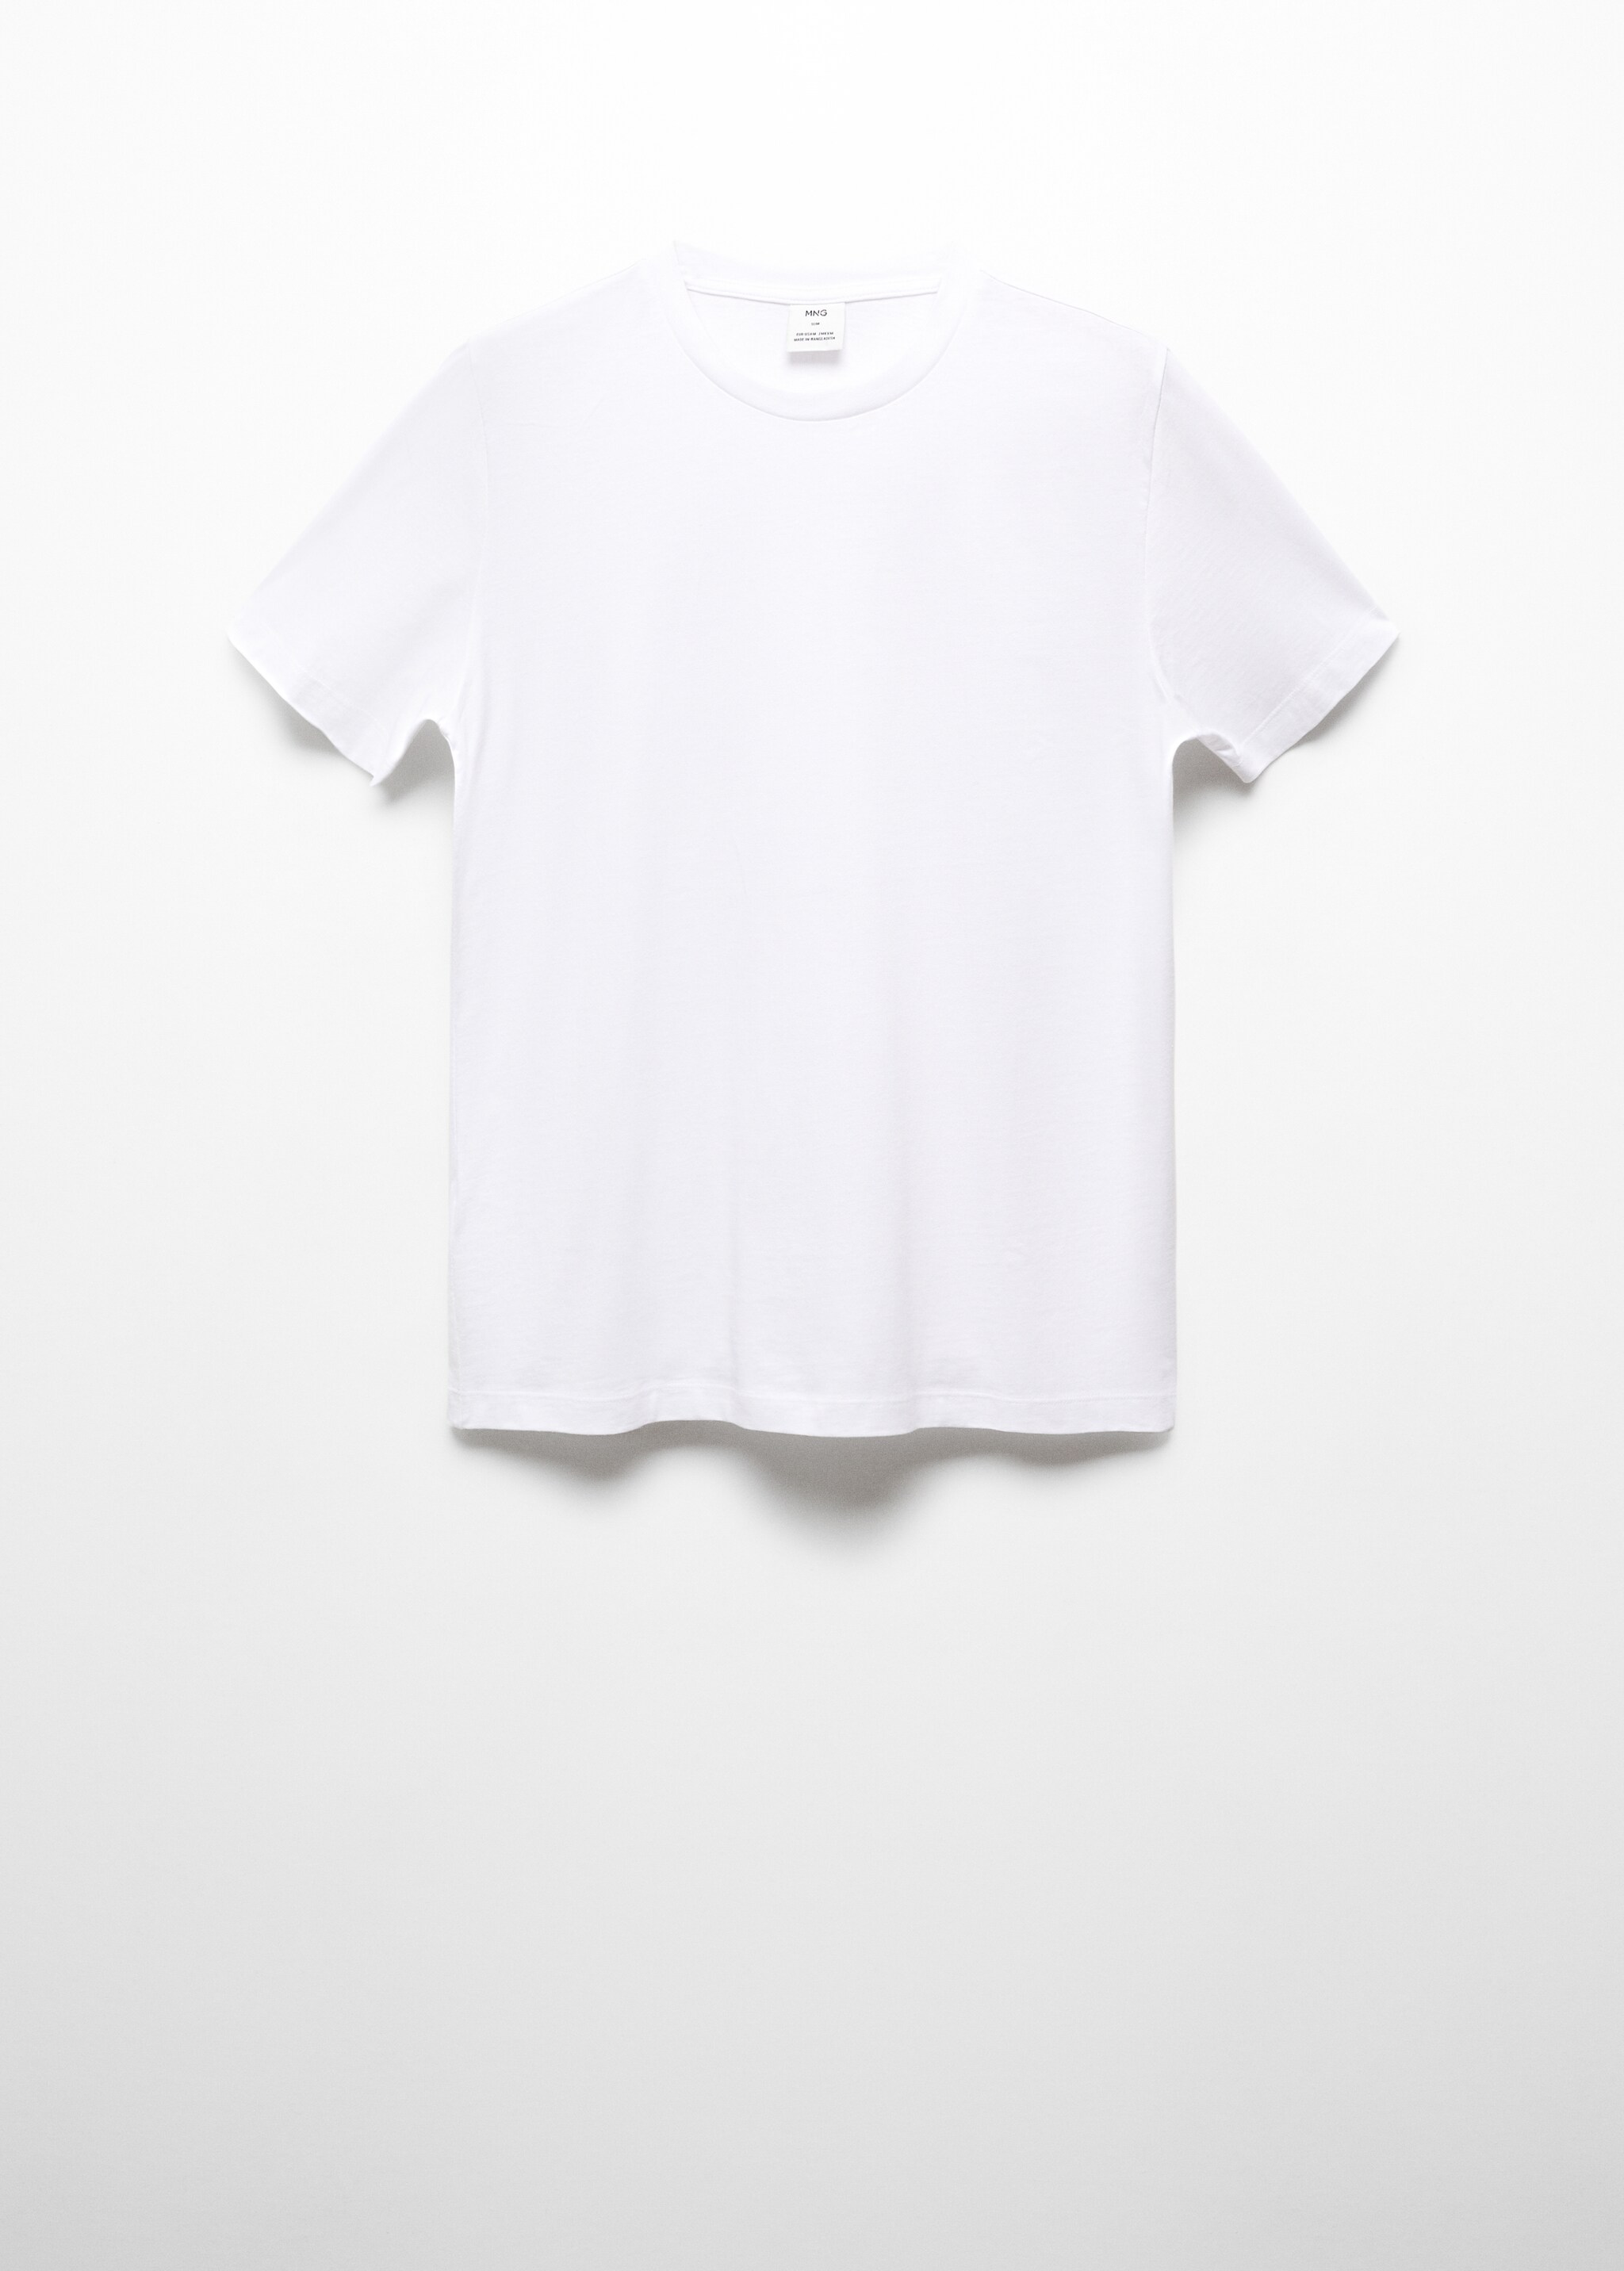 Maglietta basic cotone stretch - Articolo senza modello